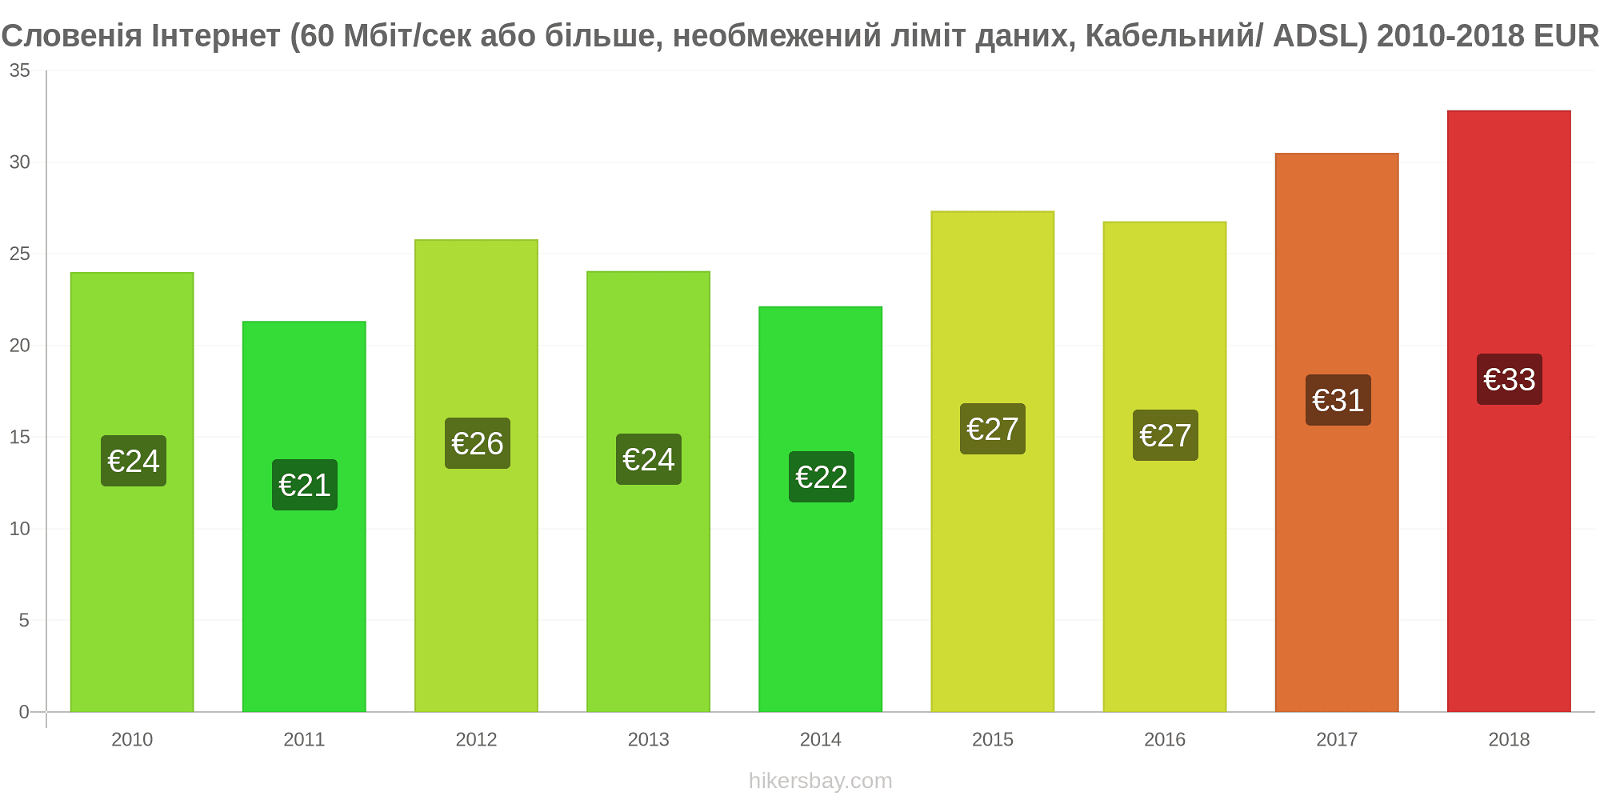 Словенія зміни цін Інтернет (60 Мбіт/с або більше, необмежений ліміт даних, кабель/ADSL) hikersbay.com